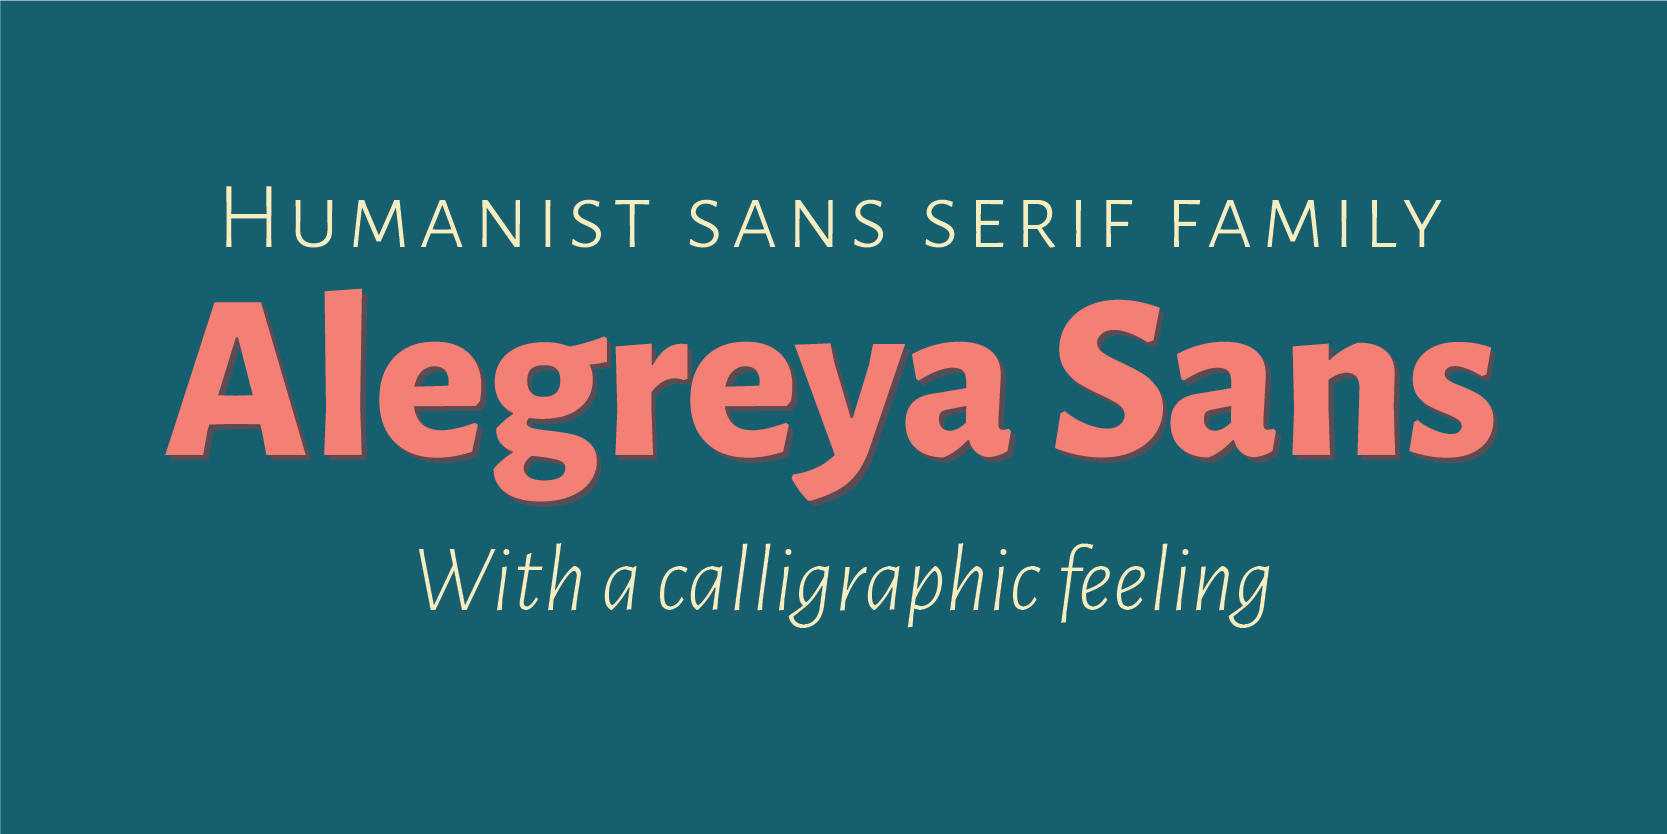 Card displaying Alegreya Sans typeface in various styles